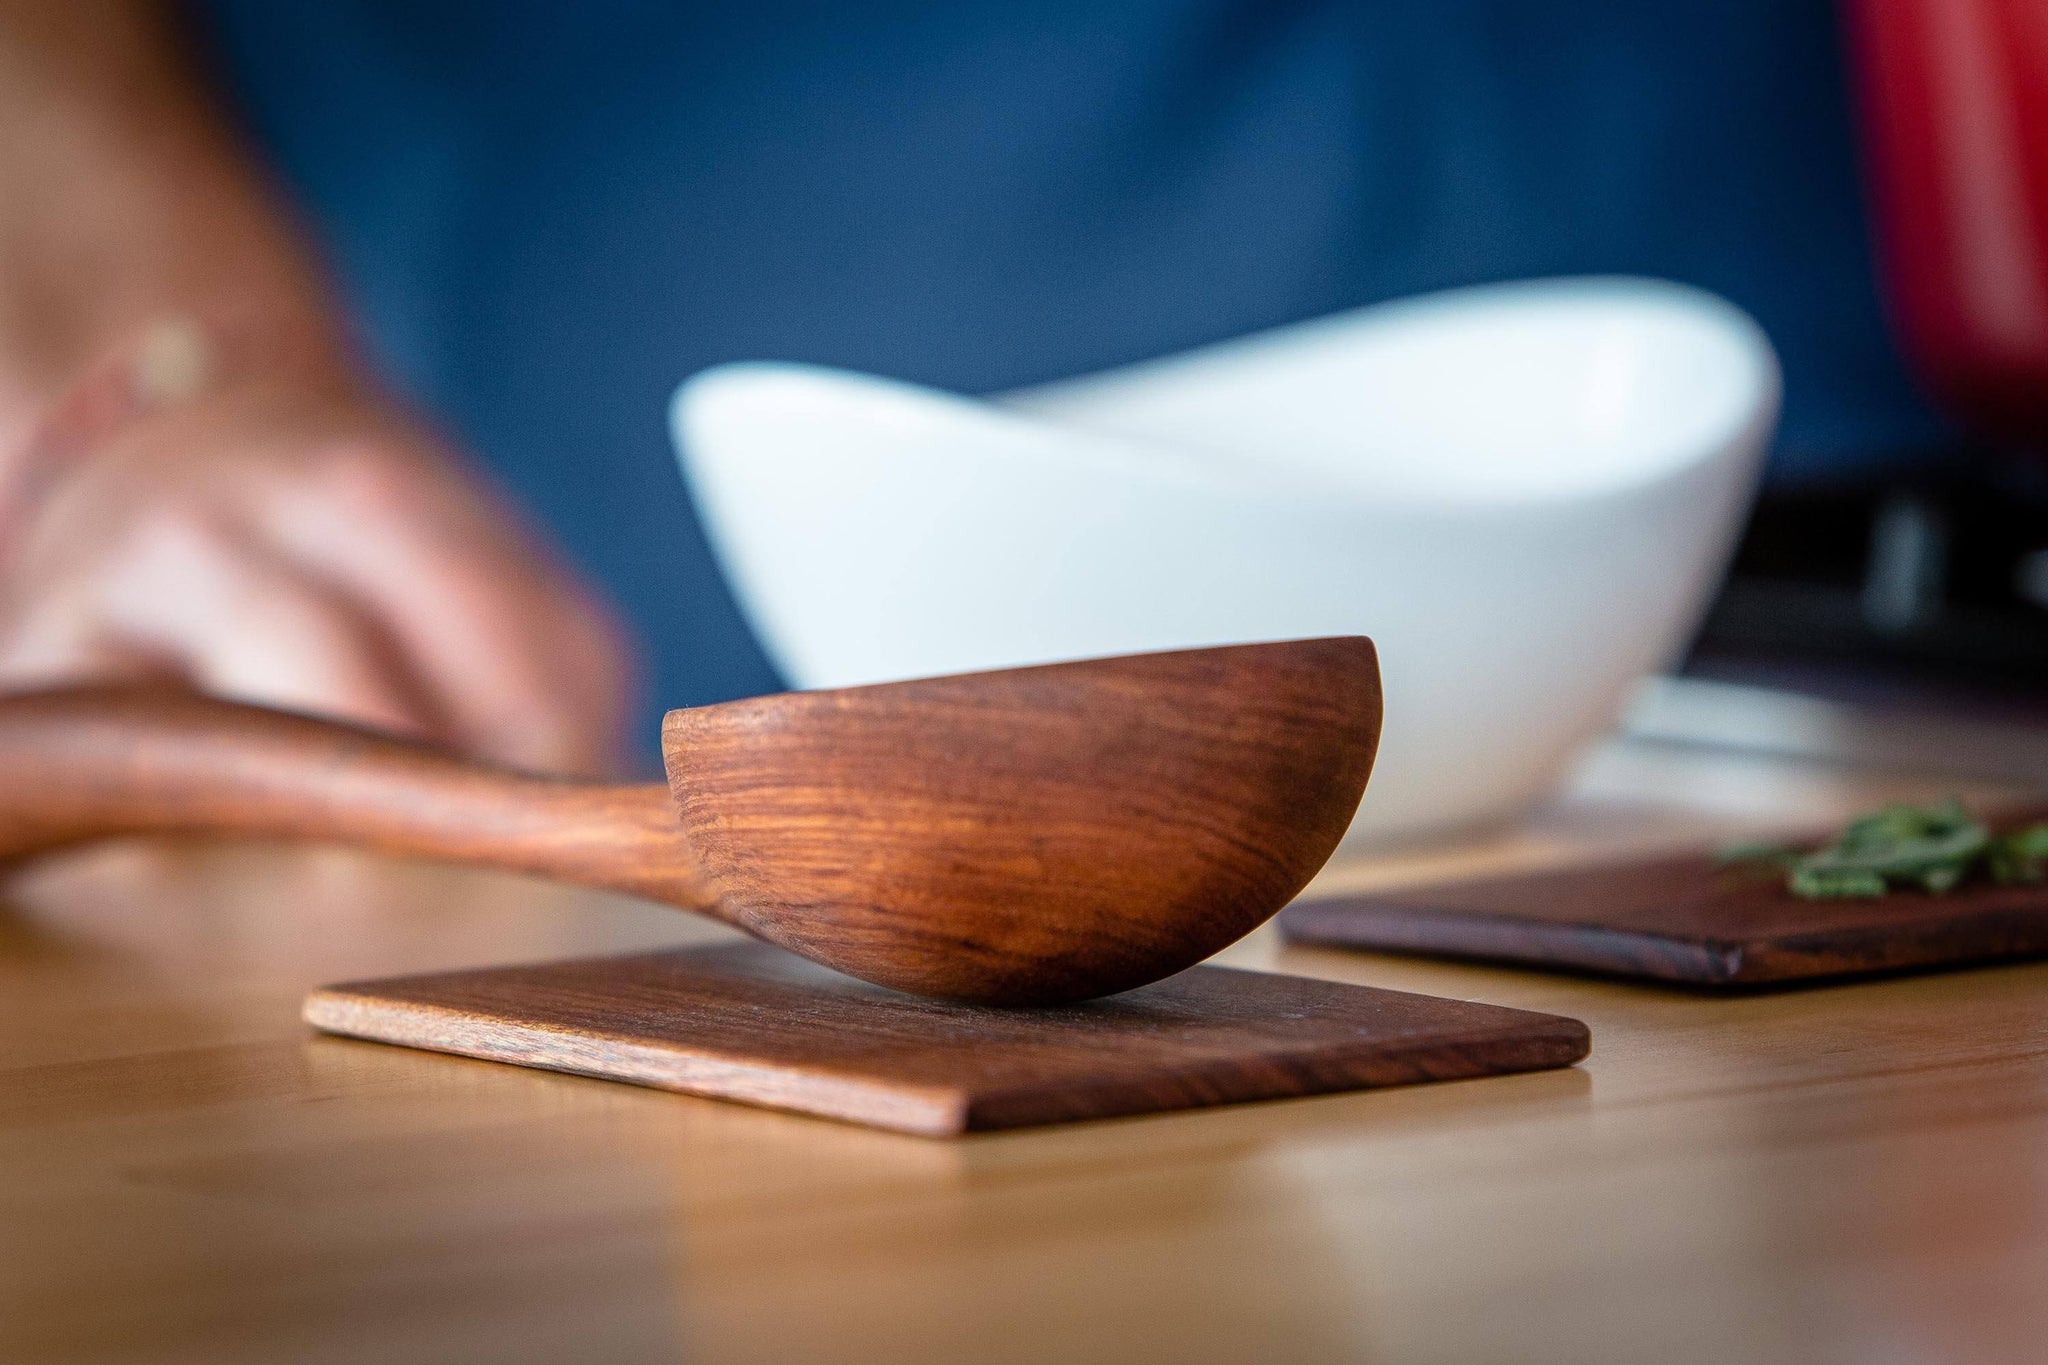 Wooden Ladle, Large Ladle Spoon, Soup Ladle Wooden Spoon, Wooden